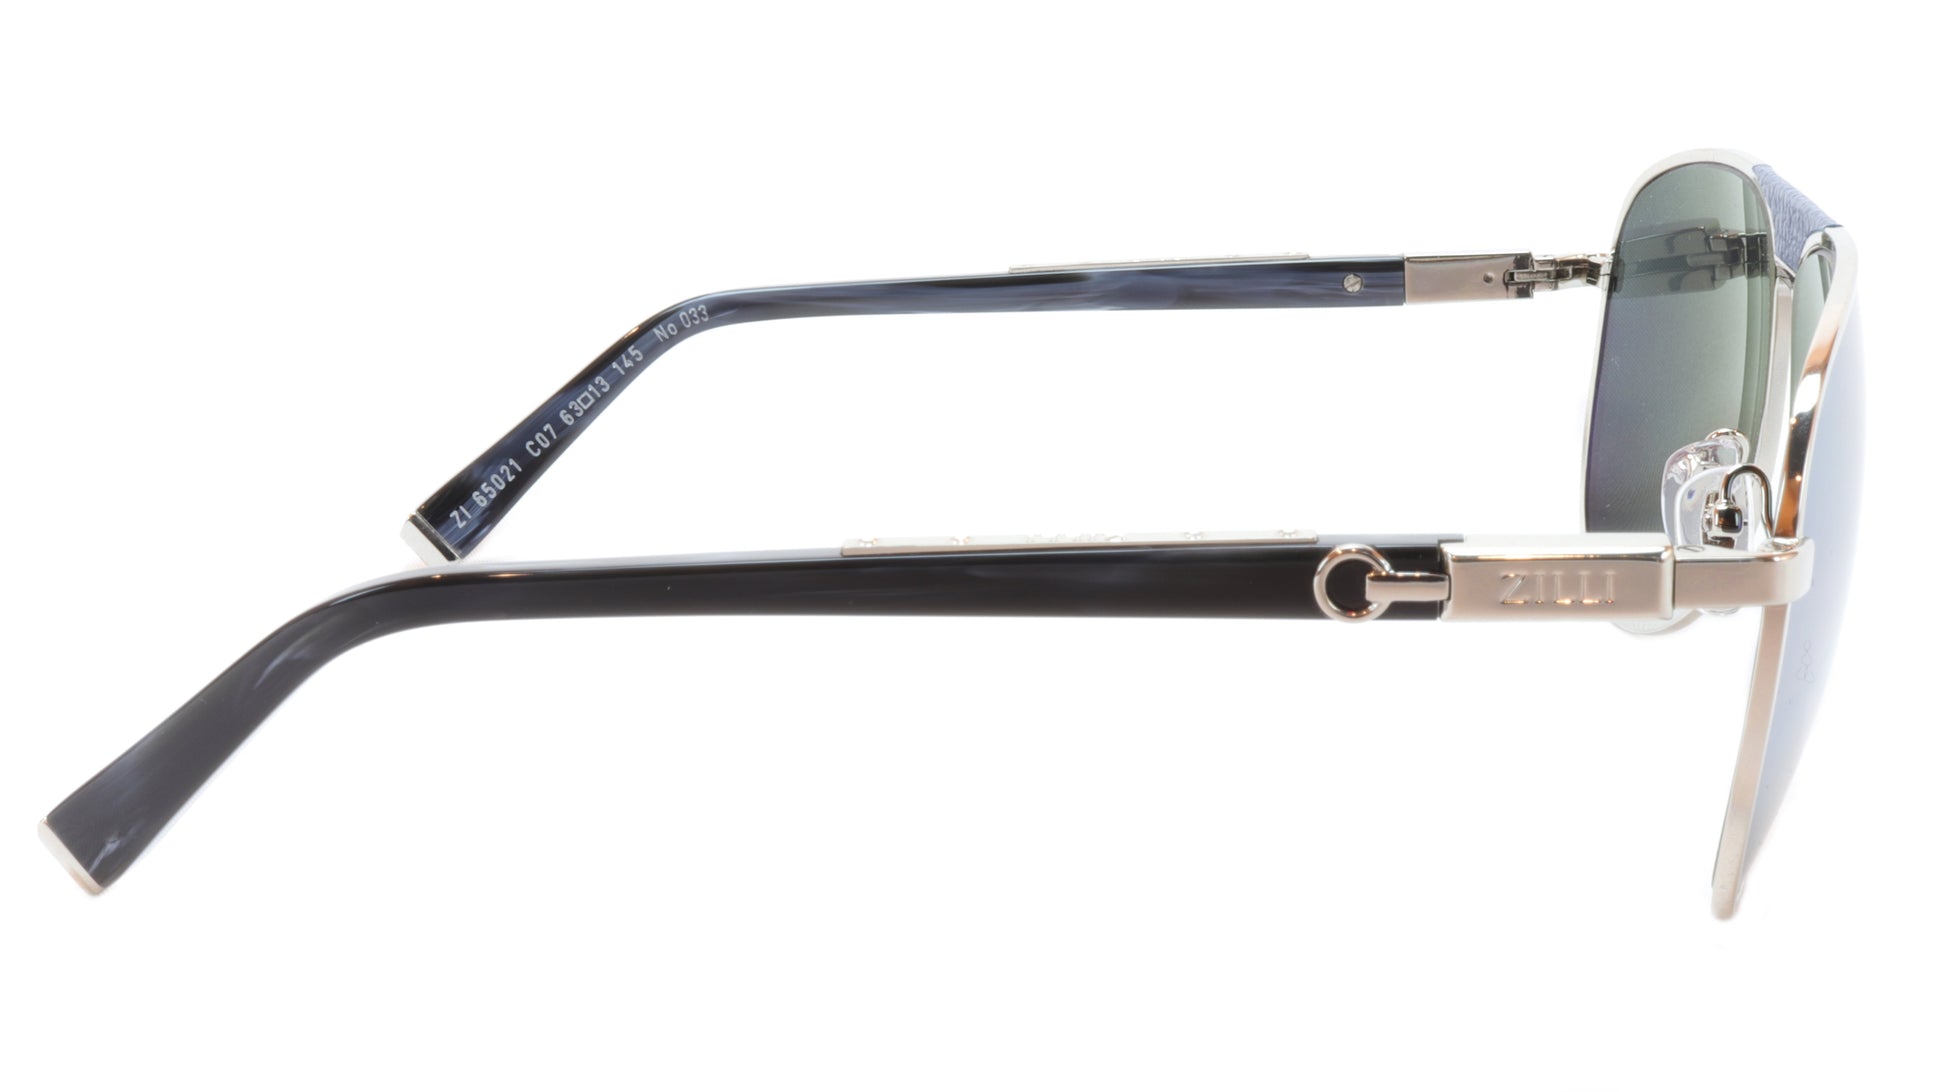 ZILLI Sunglasses Titanium Acetate Leather Polarized France ZI 65021 C07 - Frame Bay